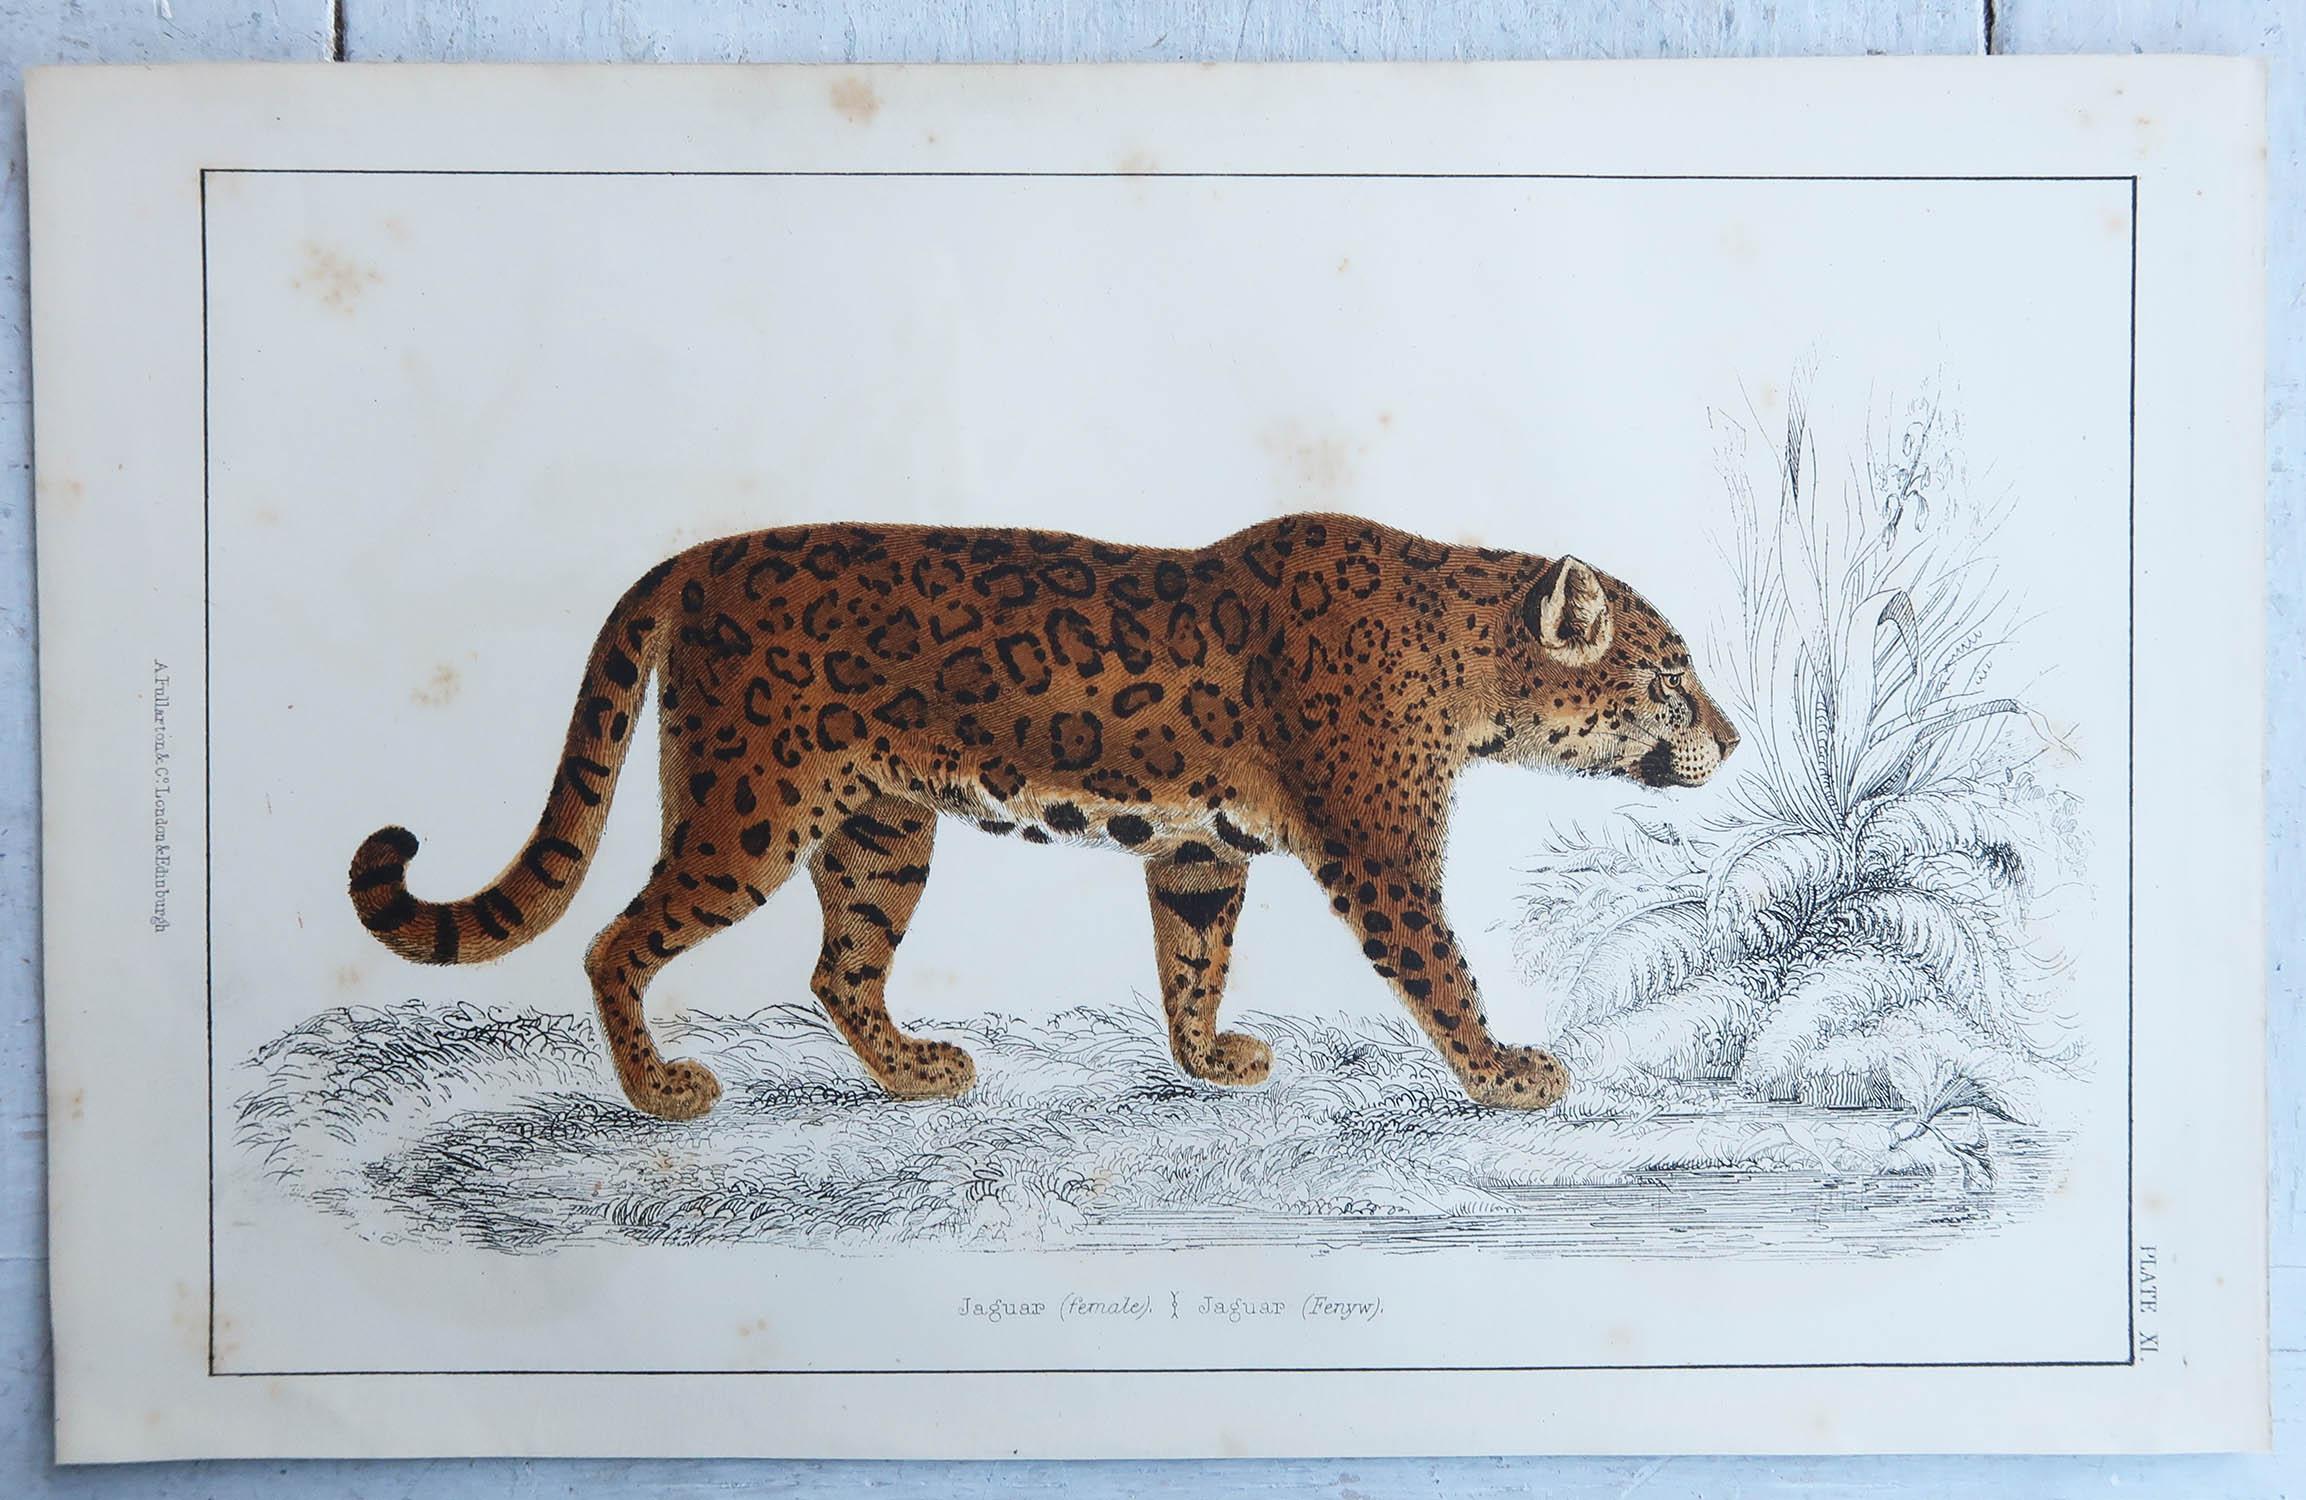 Folk Art Original Antique Print of a Jaguar, 1847 'Unframed' For Sale